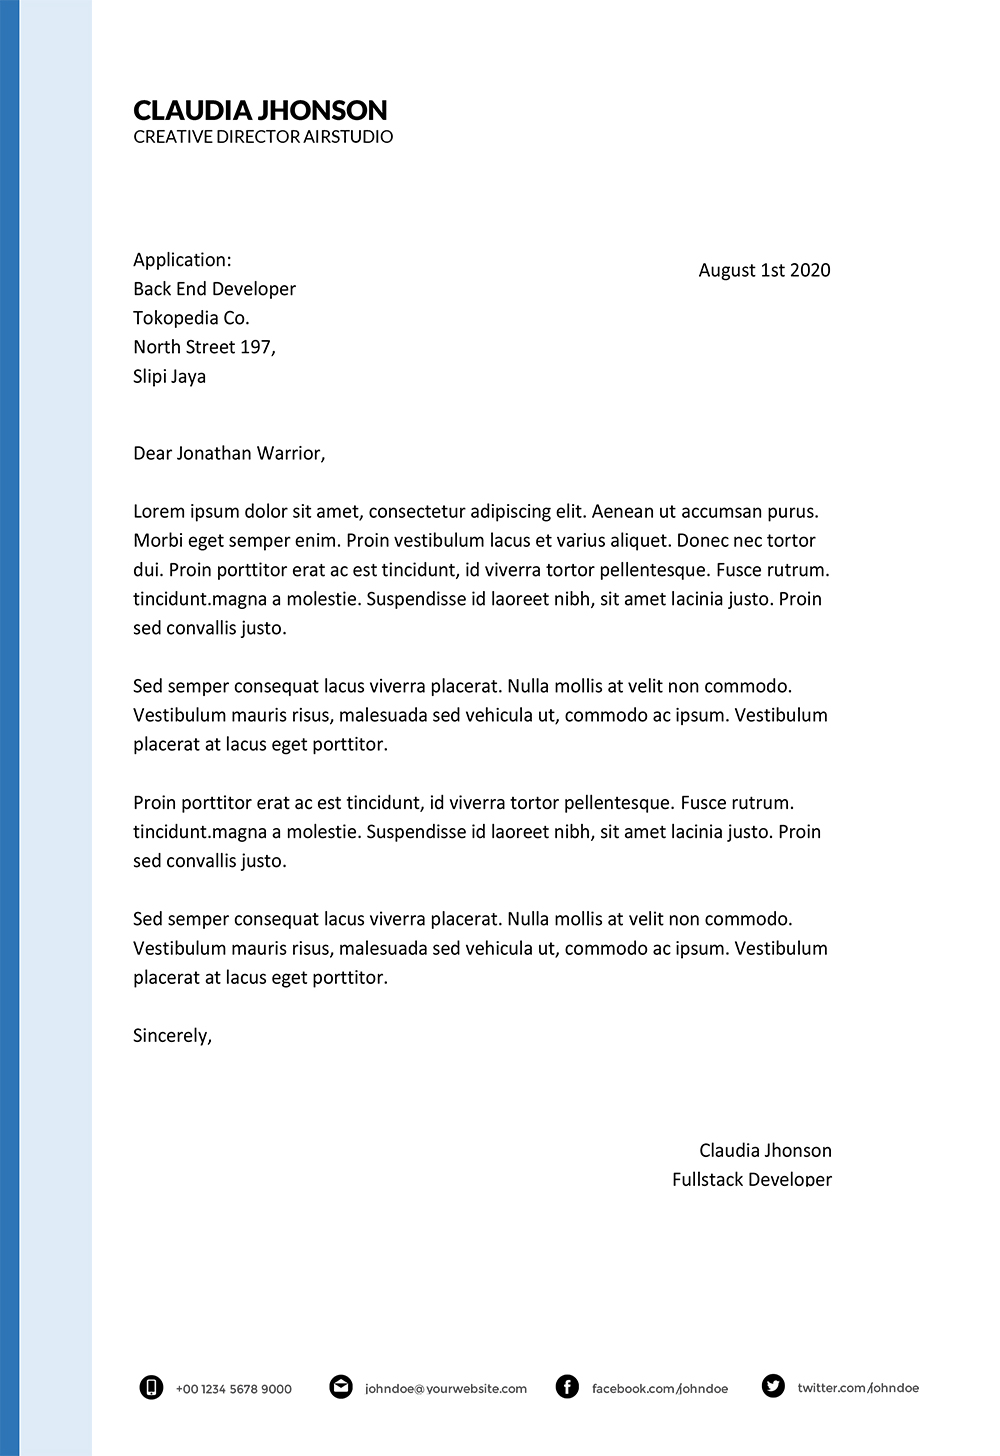 resume cover letter deutsch